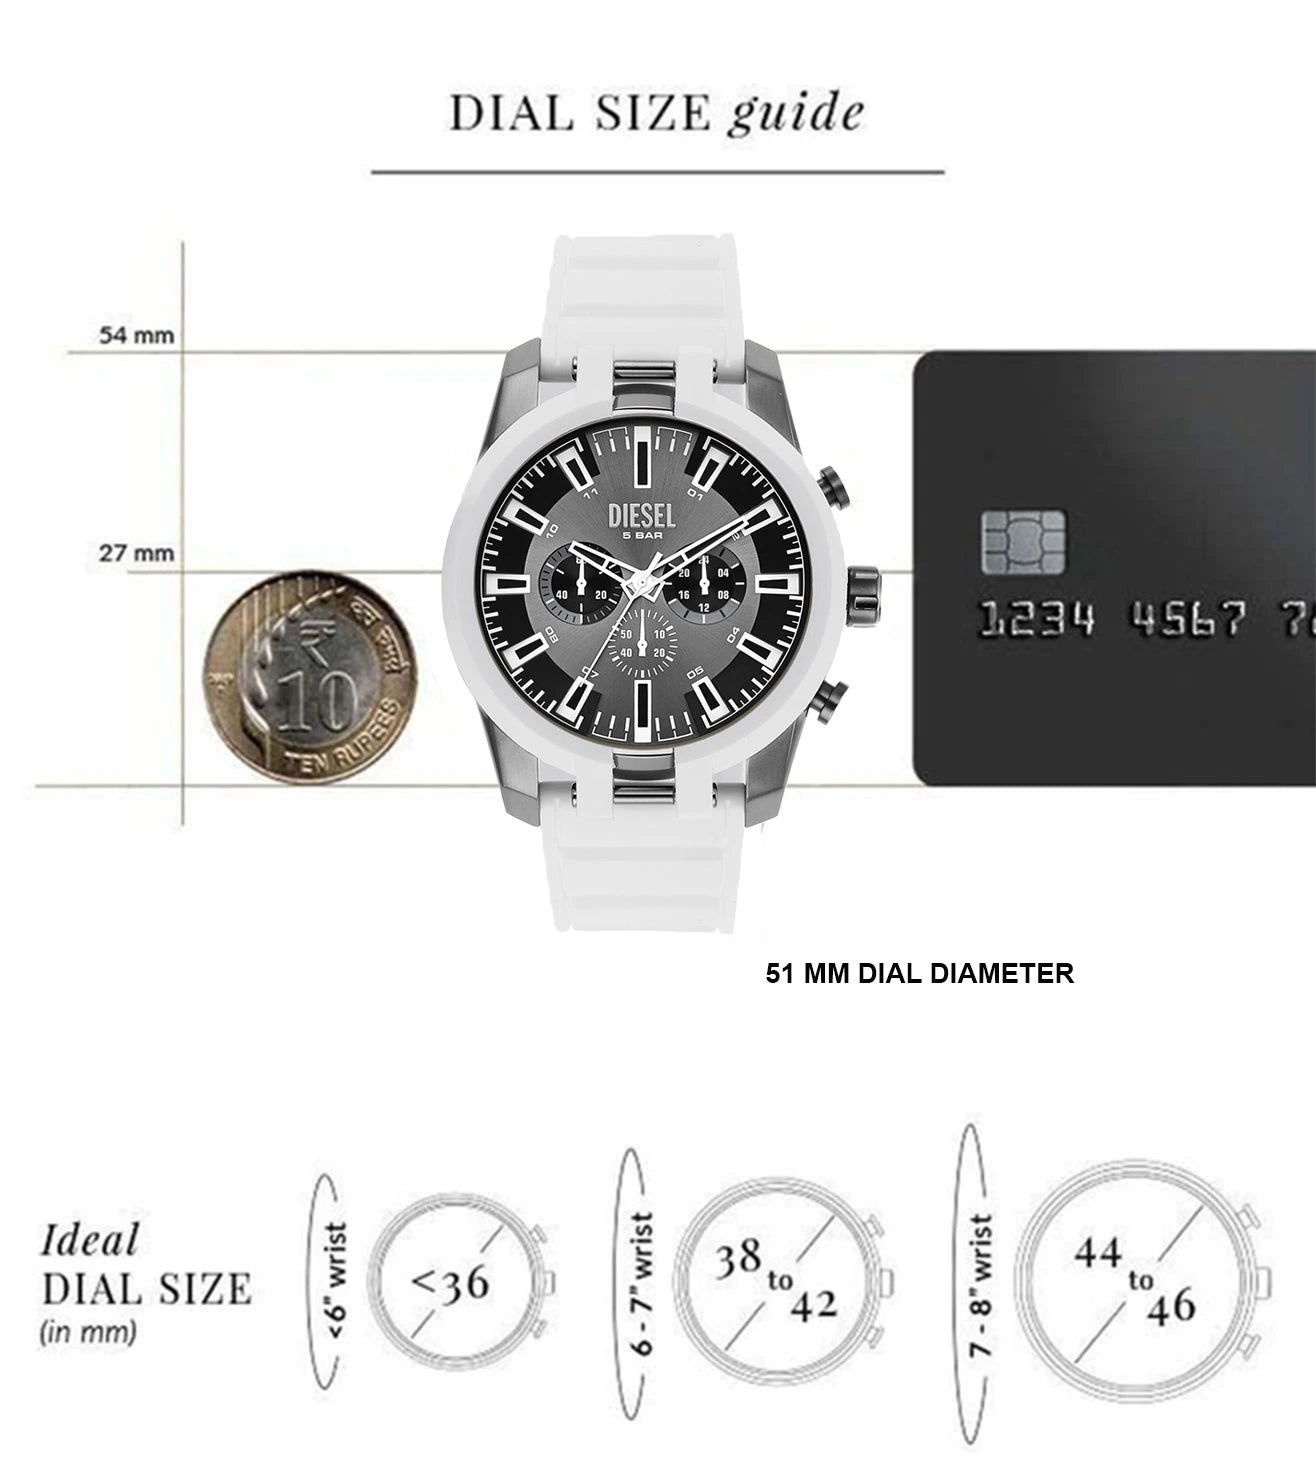 DZ4631 | DIESEL Split Chronograph Watch for Men